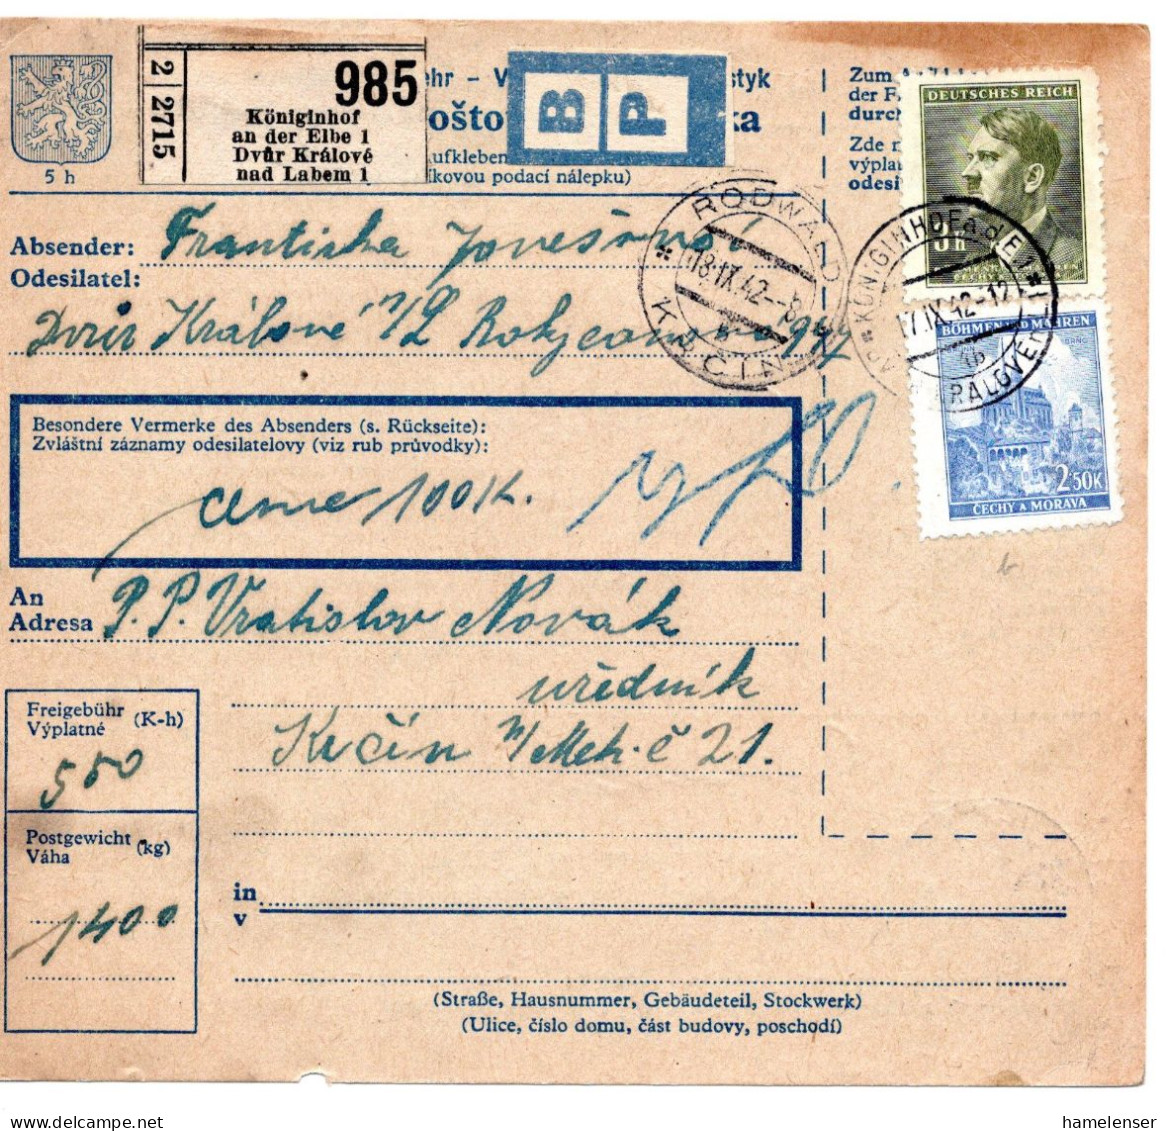 63292 - Deutsches Reich / Böhmen Und Mähren - 1942 - 3K Hitler MiF A PaketKte KOENIGINHOF -> RODWALD - Lettres & Documents